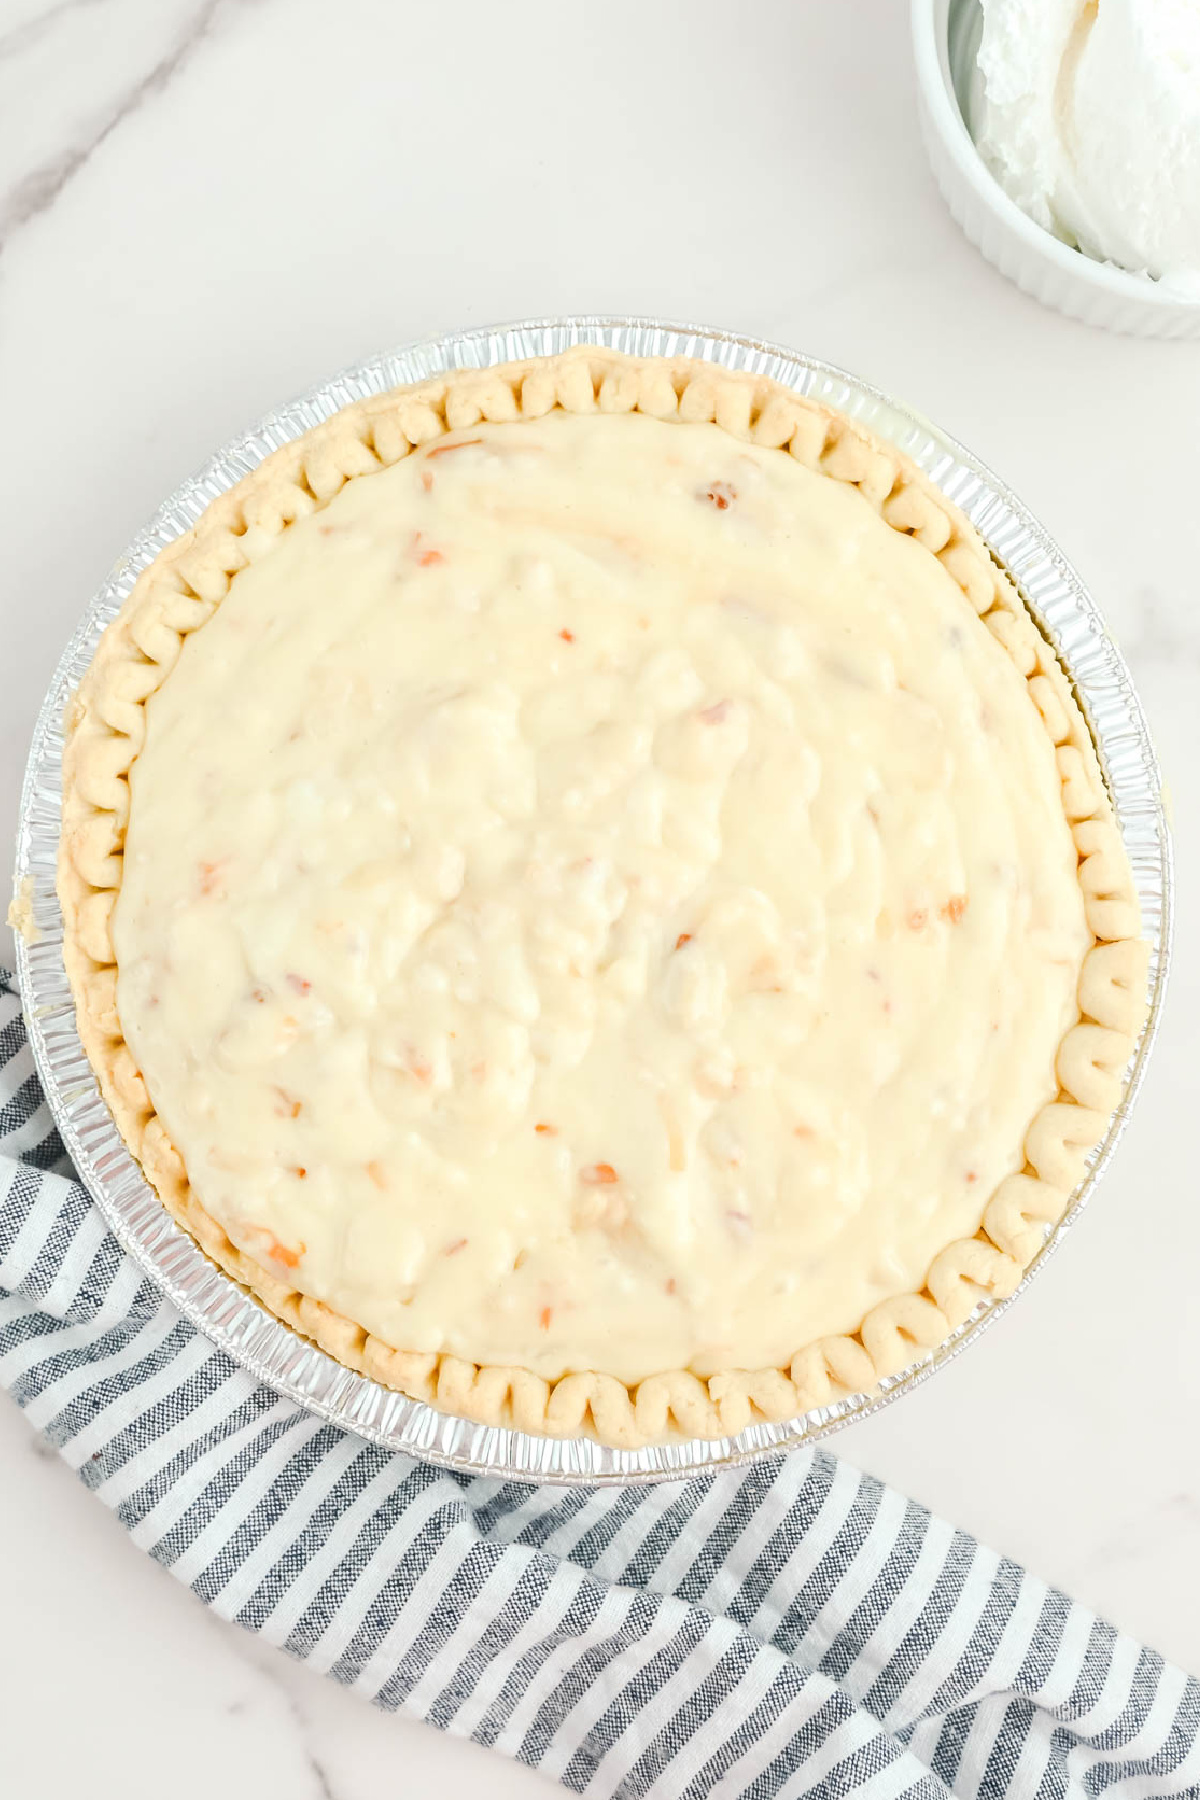 A pie in a baked pie crust